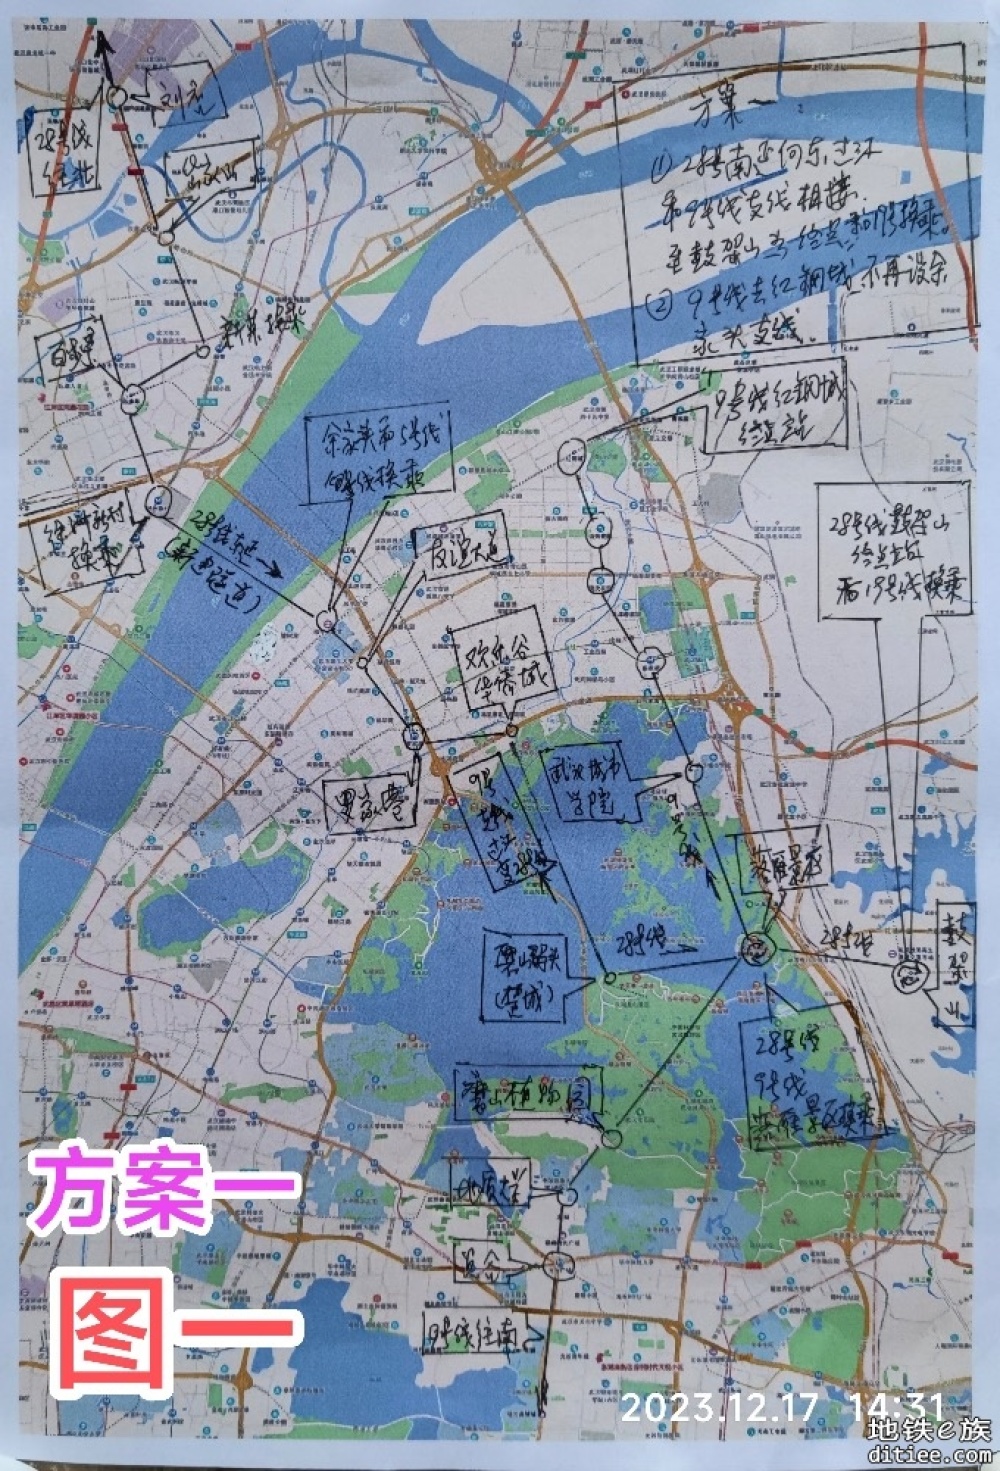 转自城市留言板：武汉地铁规划建议